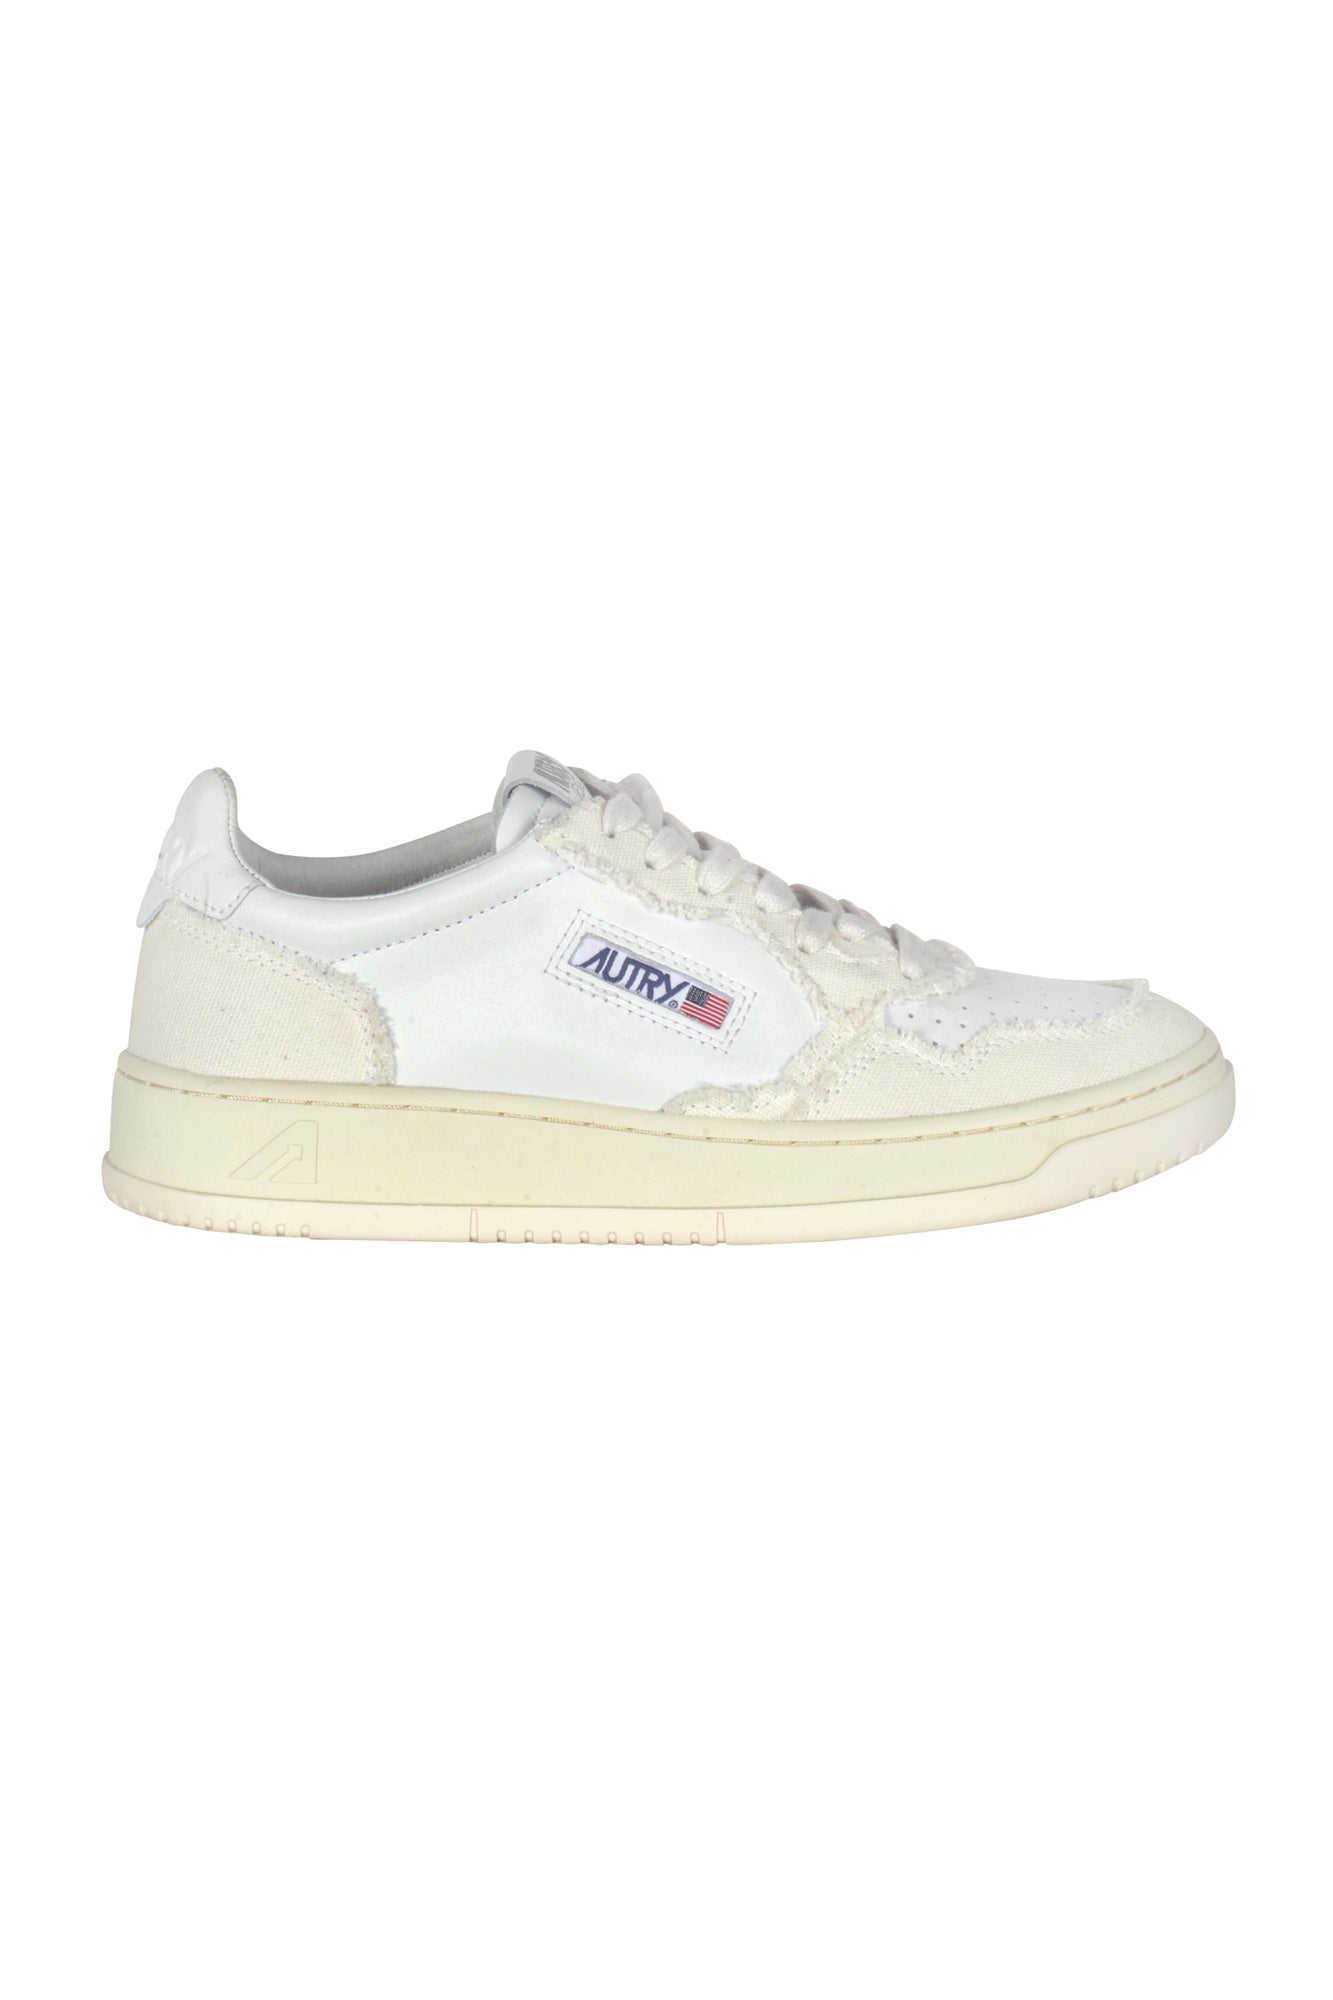 Autry - Sneakers - 430016 - Bianco/Avorio